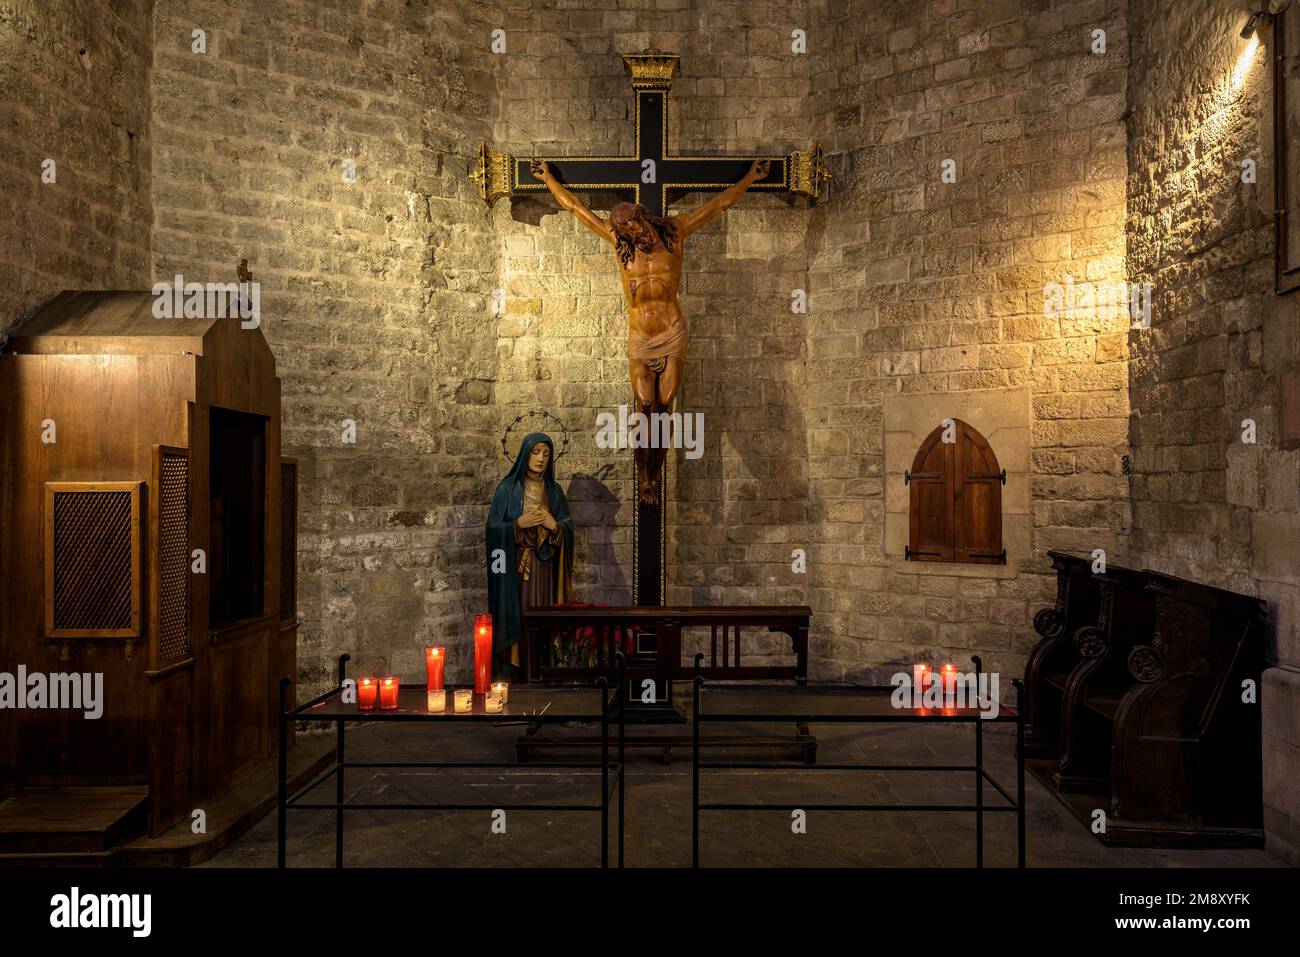 Crocifisso in una delle cappelle dell'abside della Basilica di Santa Maria del Mar (Barcellona, Catalogna, Spagna) ESP: Crocifijo en Santa Maria del Mar Foto Stock